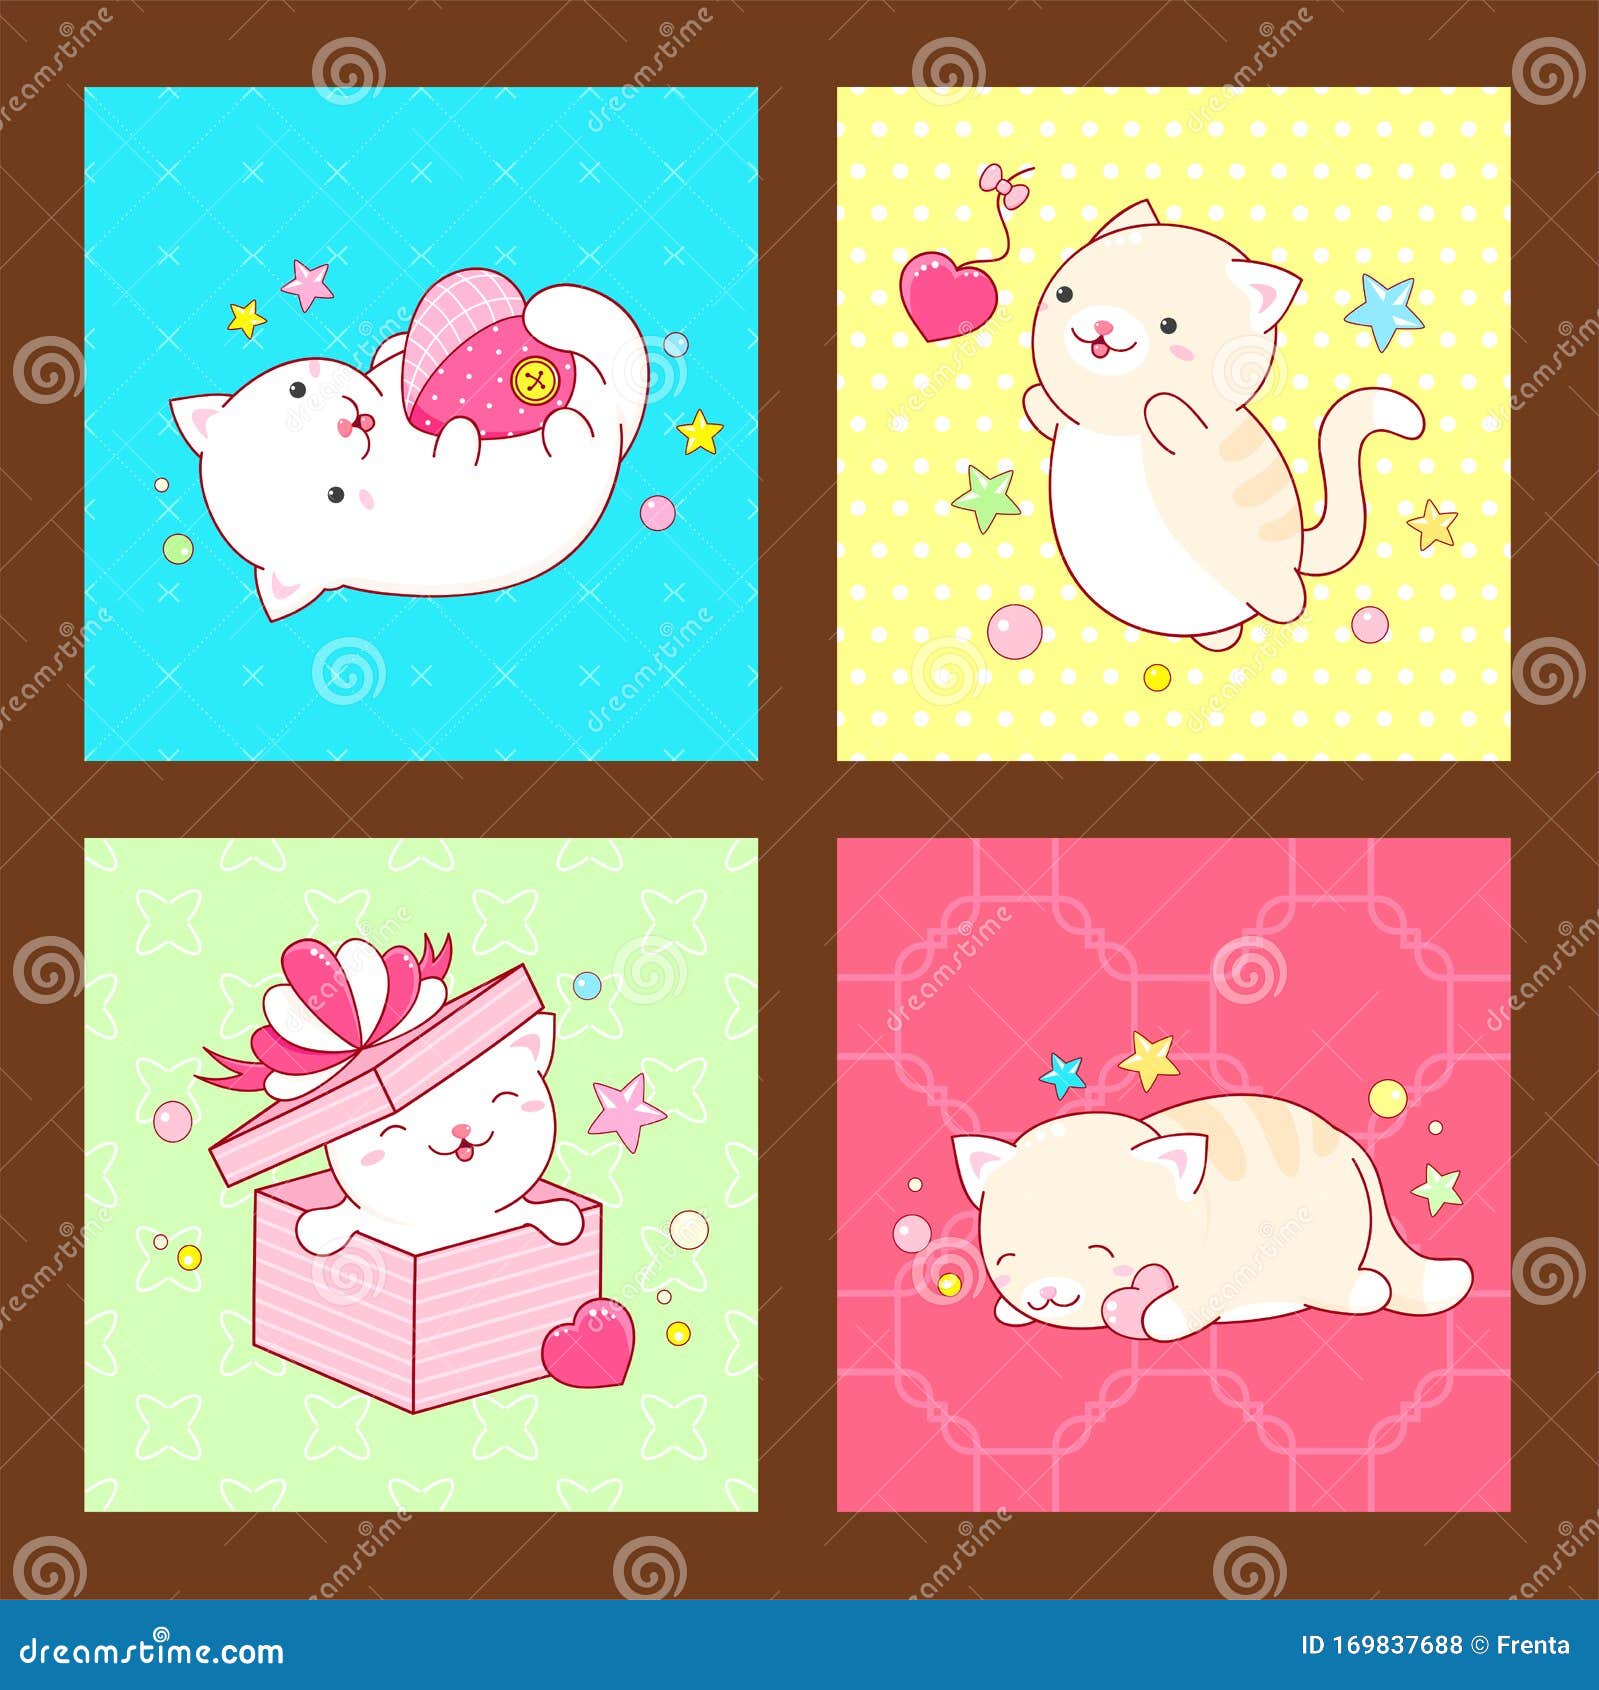 Ilustração de design de adesivo de gato kawaii adorável e fofo